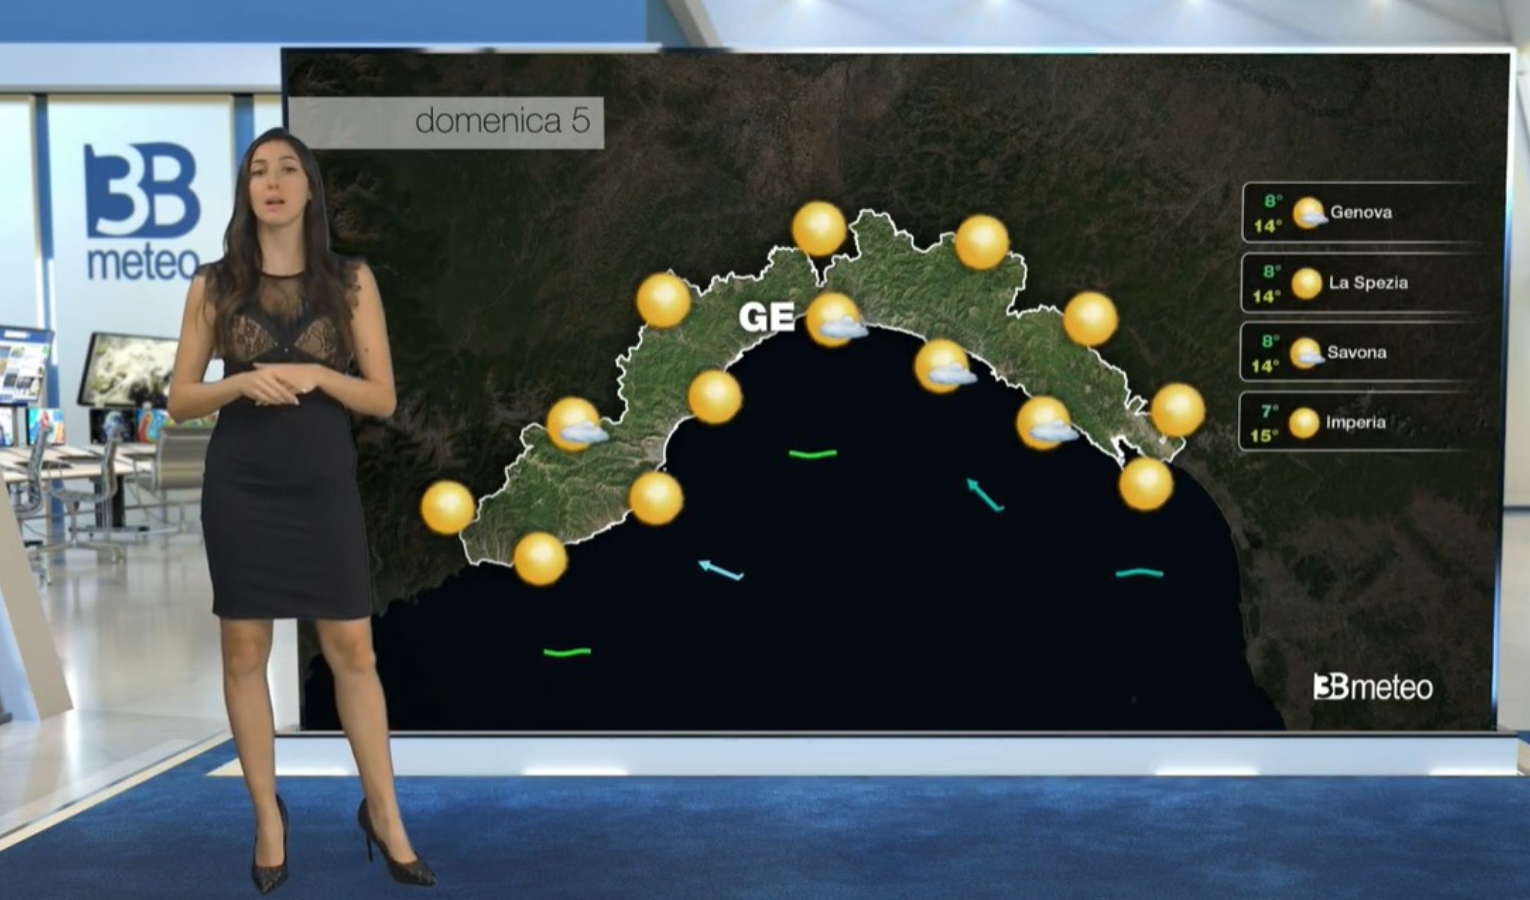 Meteo in Liguria, inizio settimana col sole: le previsioni